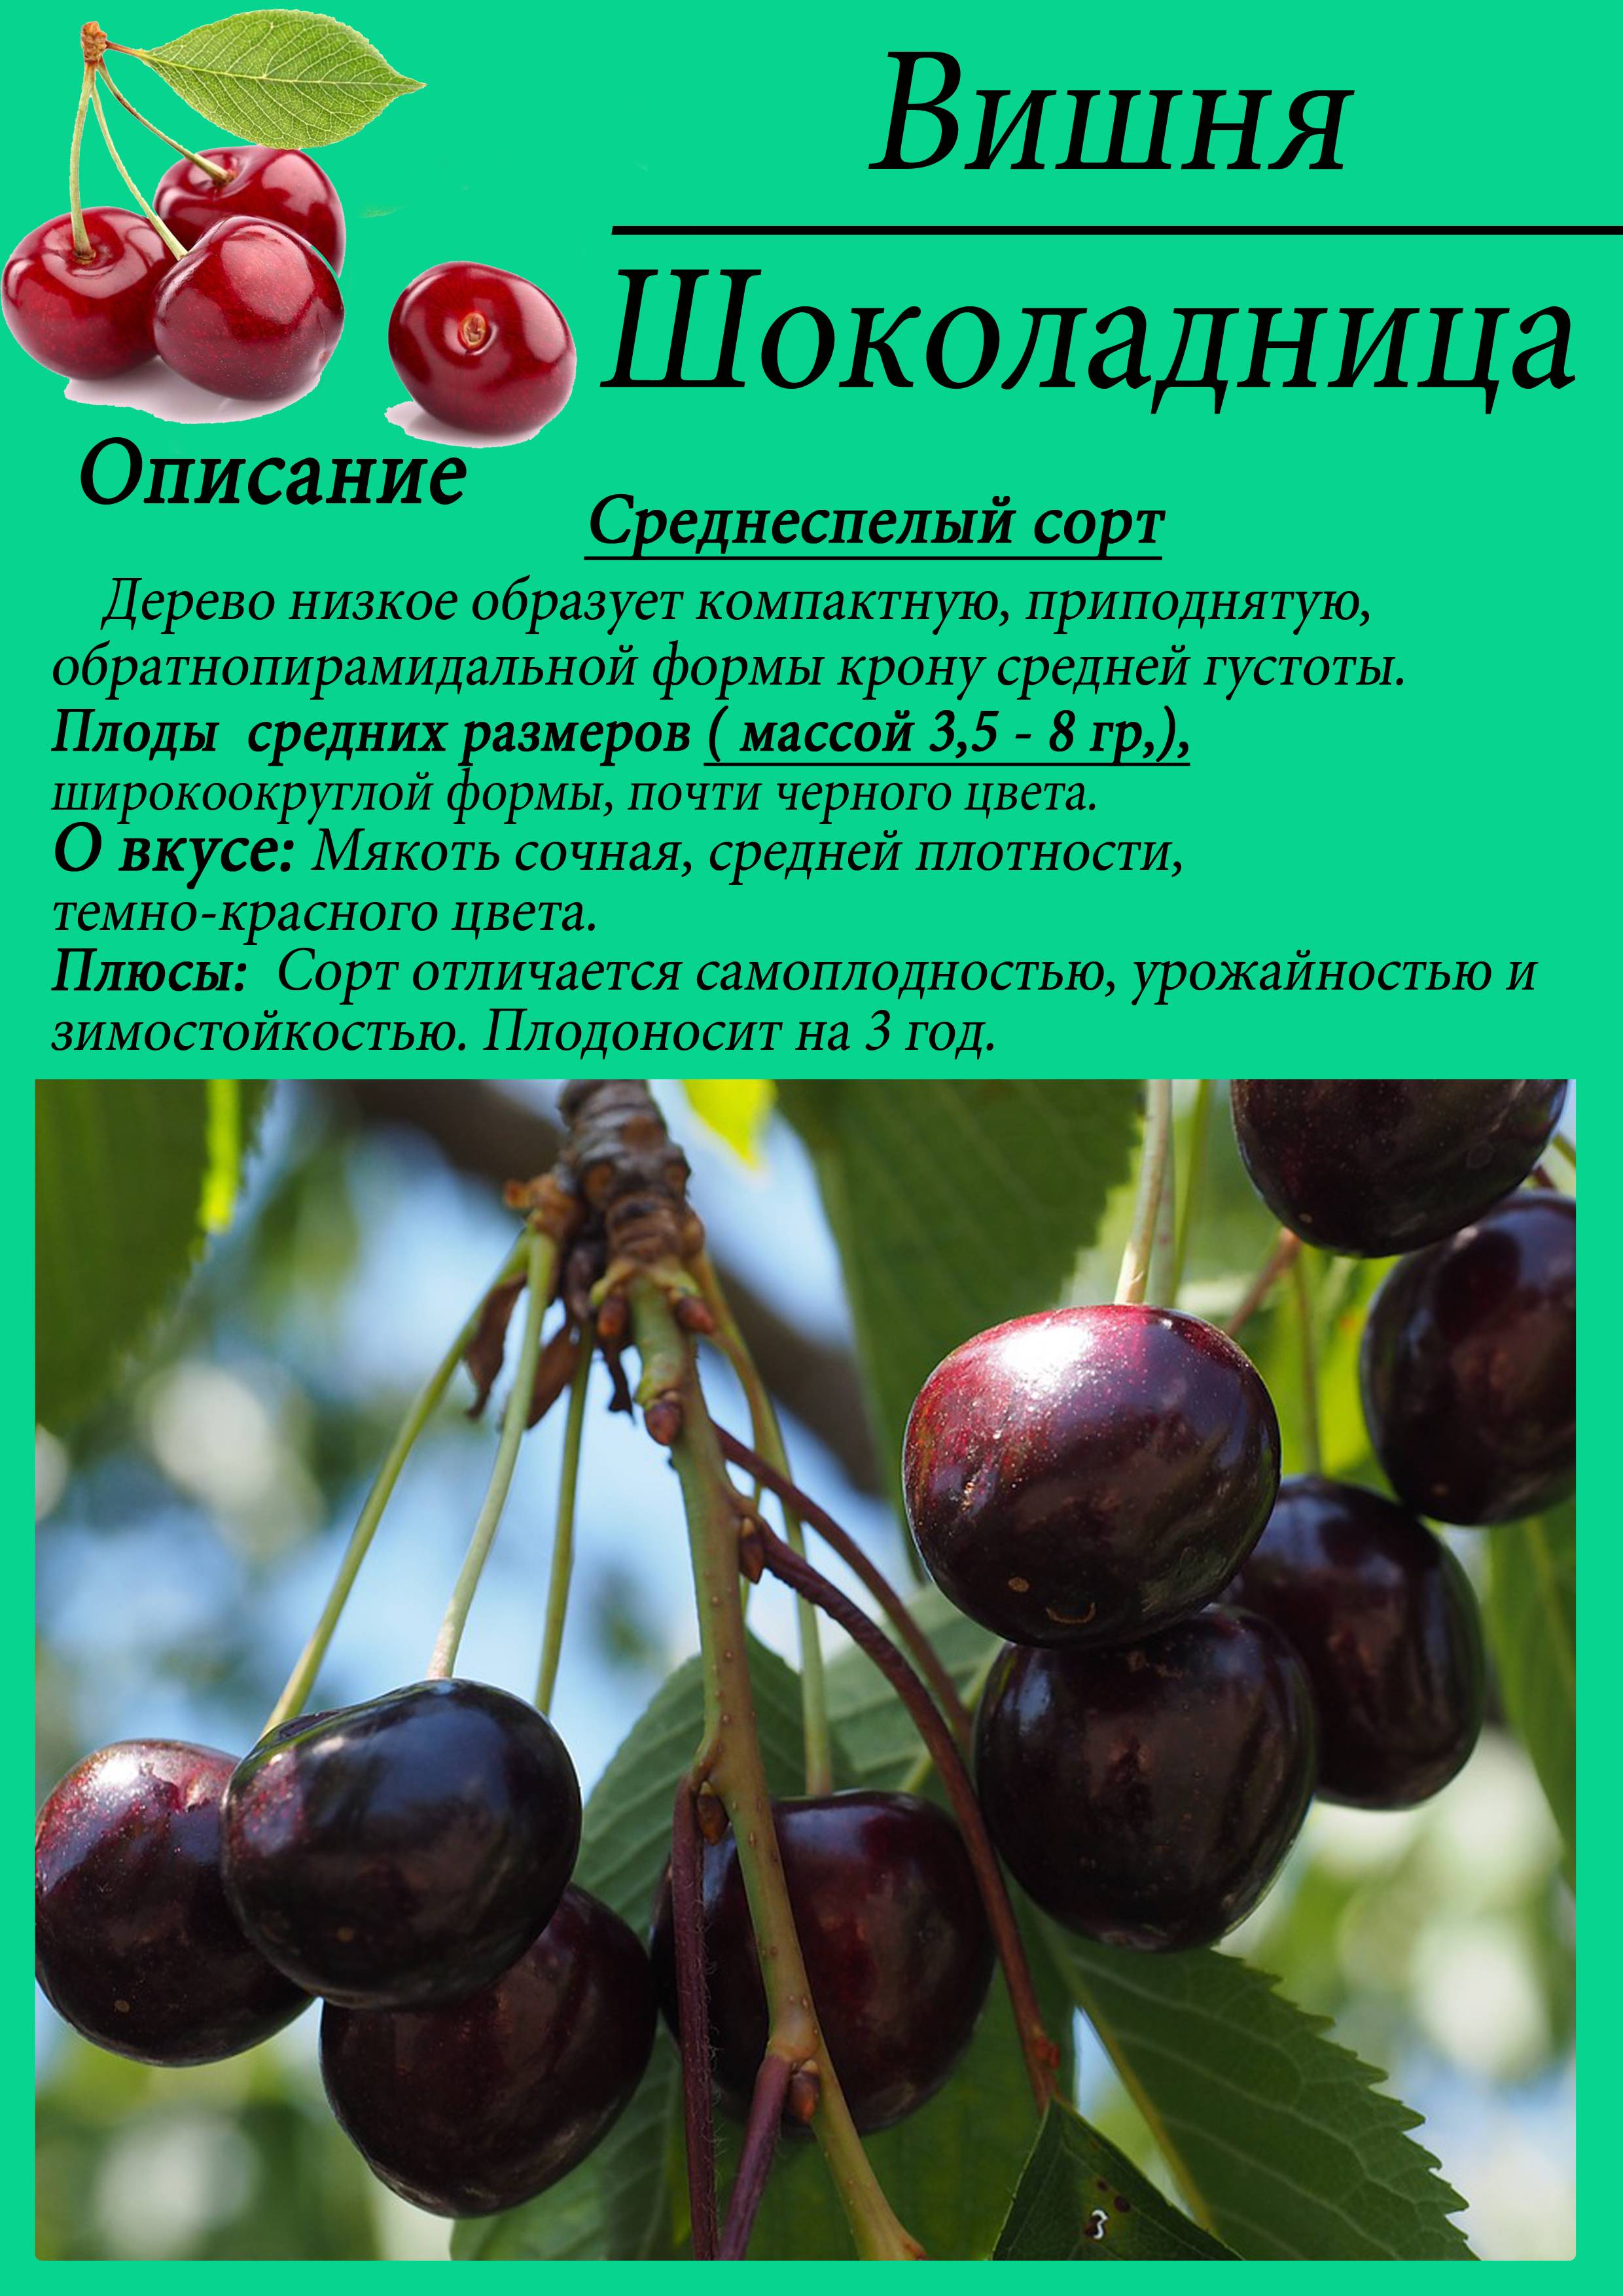 Топ-8 лучших самоплодных сортов вишни для подмосковья: описание и характеристики, советы по выбору, фото